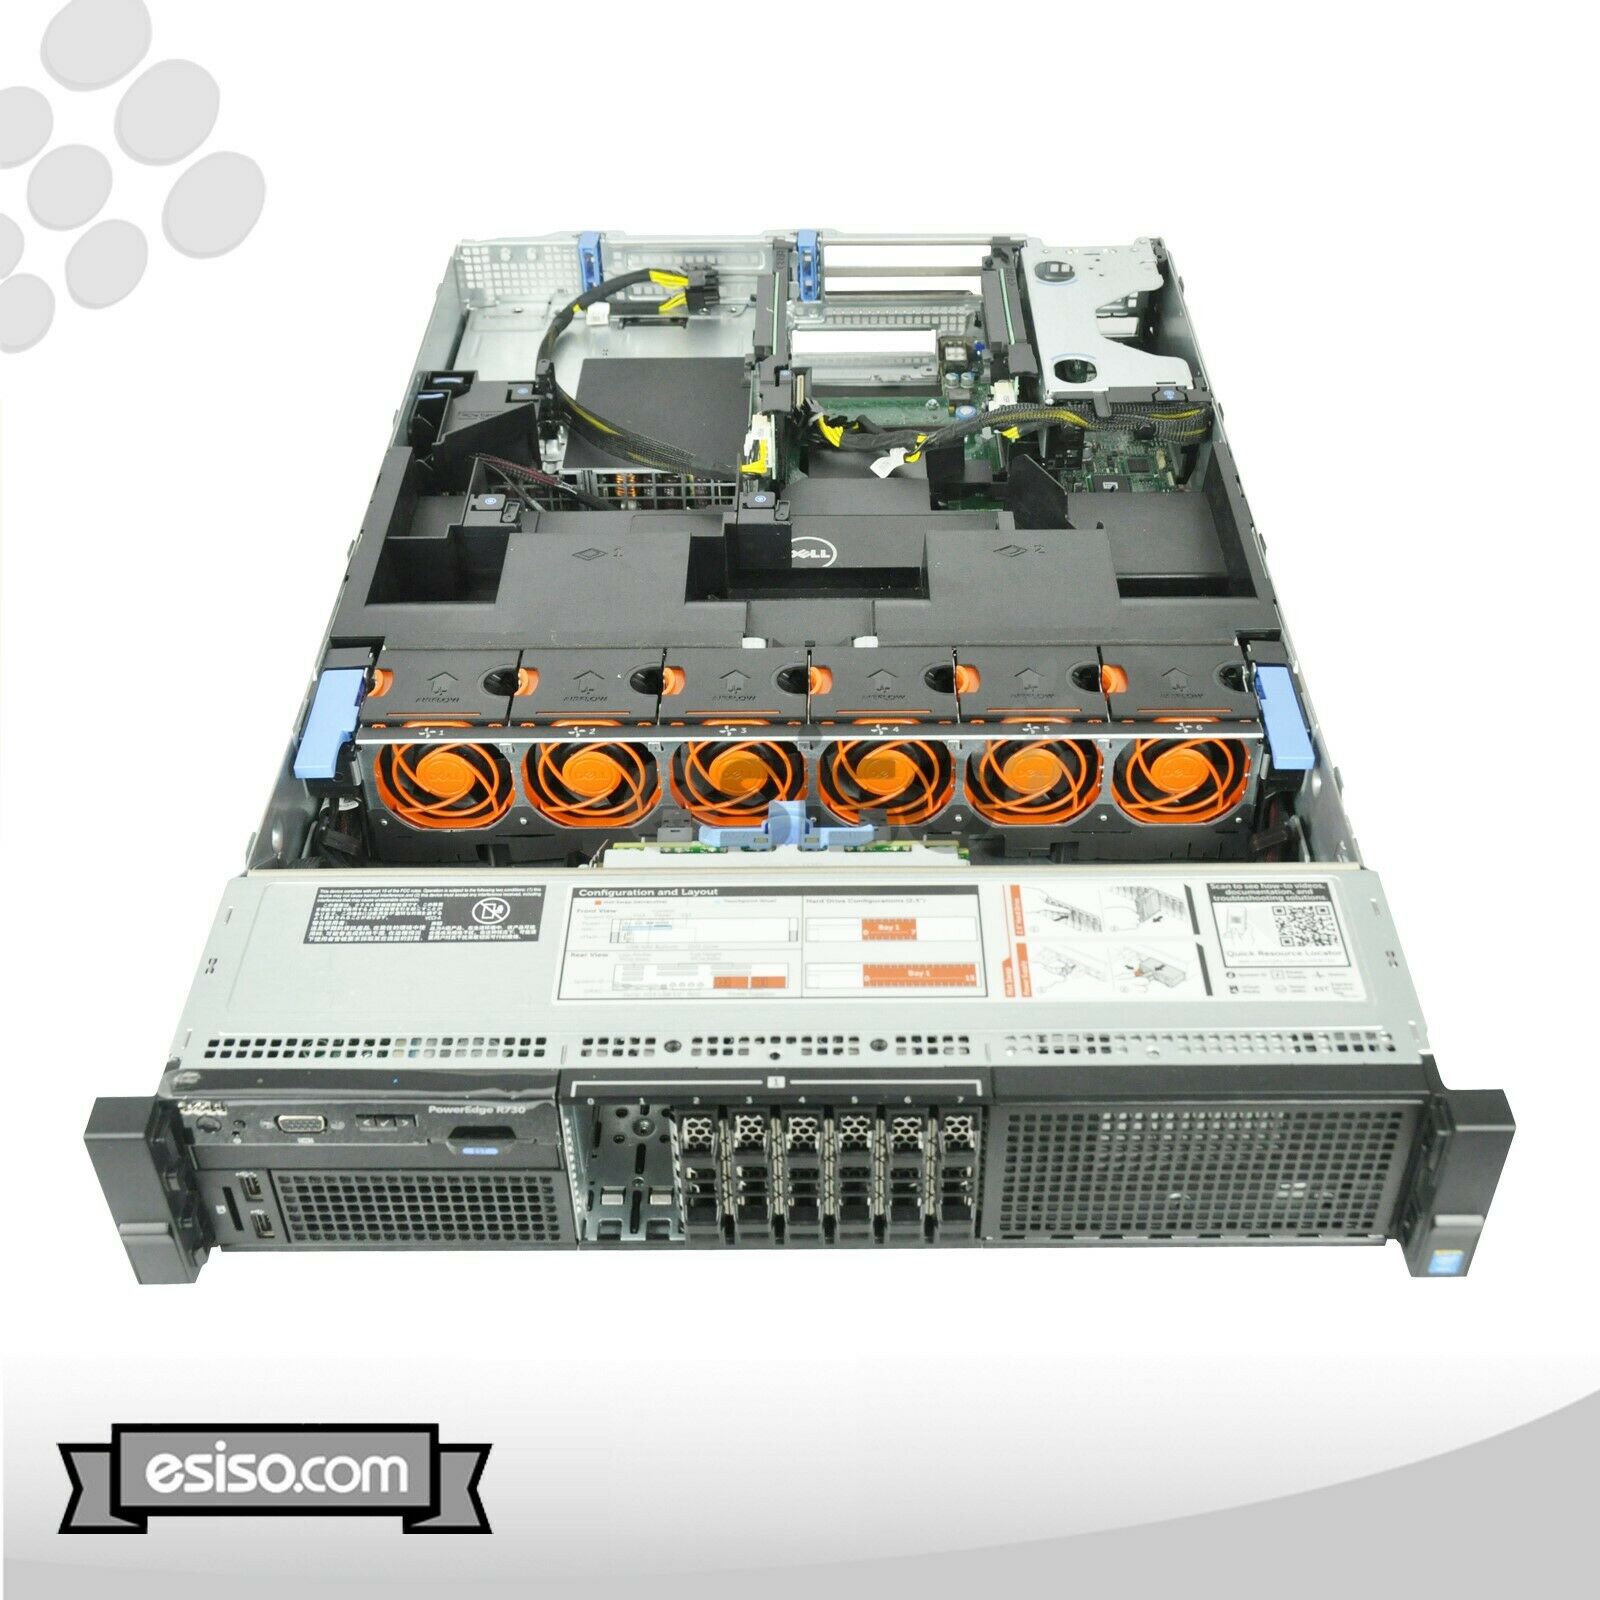 DELL POWEREDGE R730 16SFF 2x 8 CORE E5-2640V3 2.6GHz 32GB 2x 300GB 15K SAS